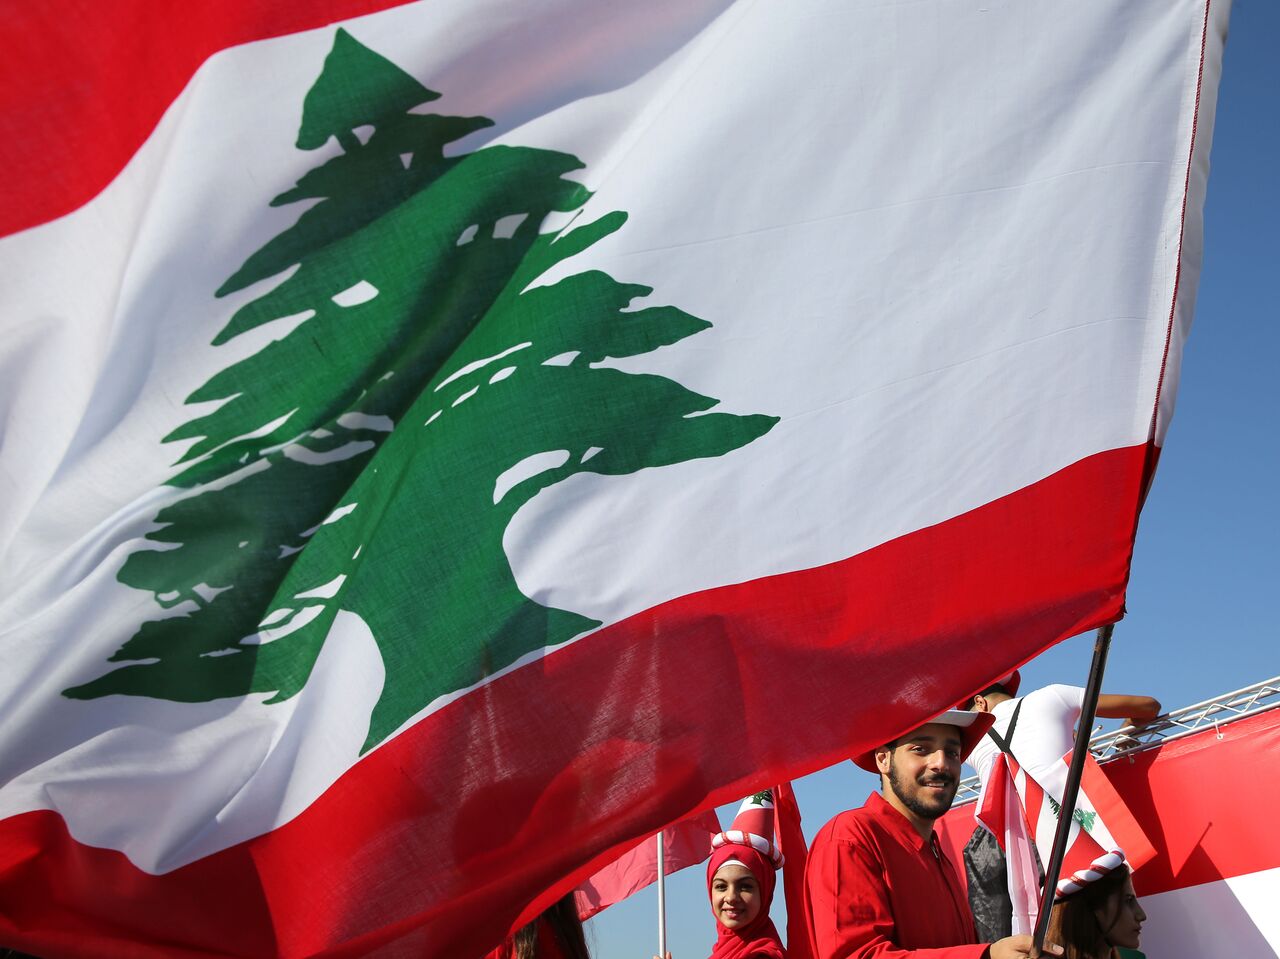 لبنان، اسرائیل را تهدید کرد